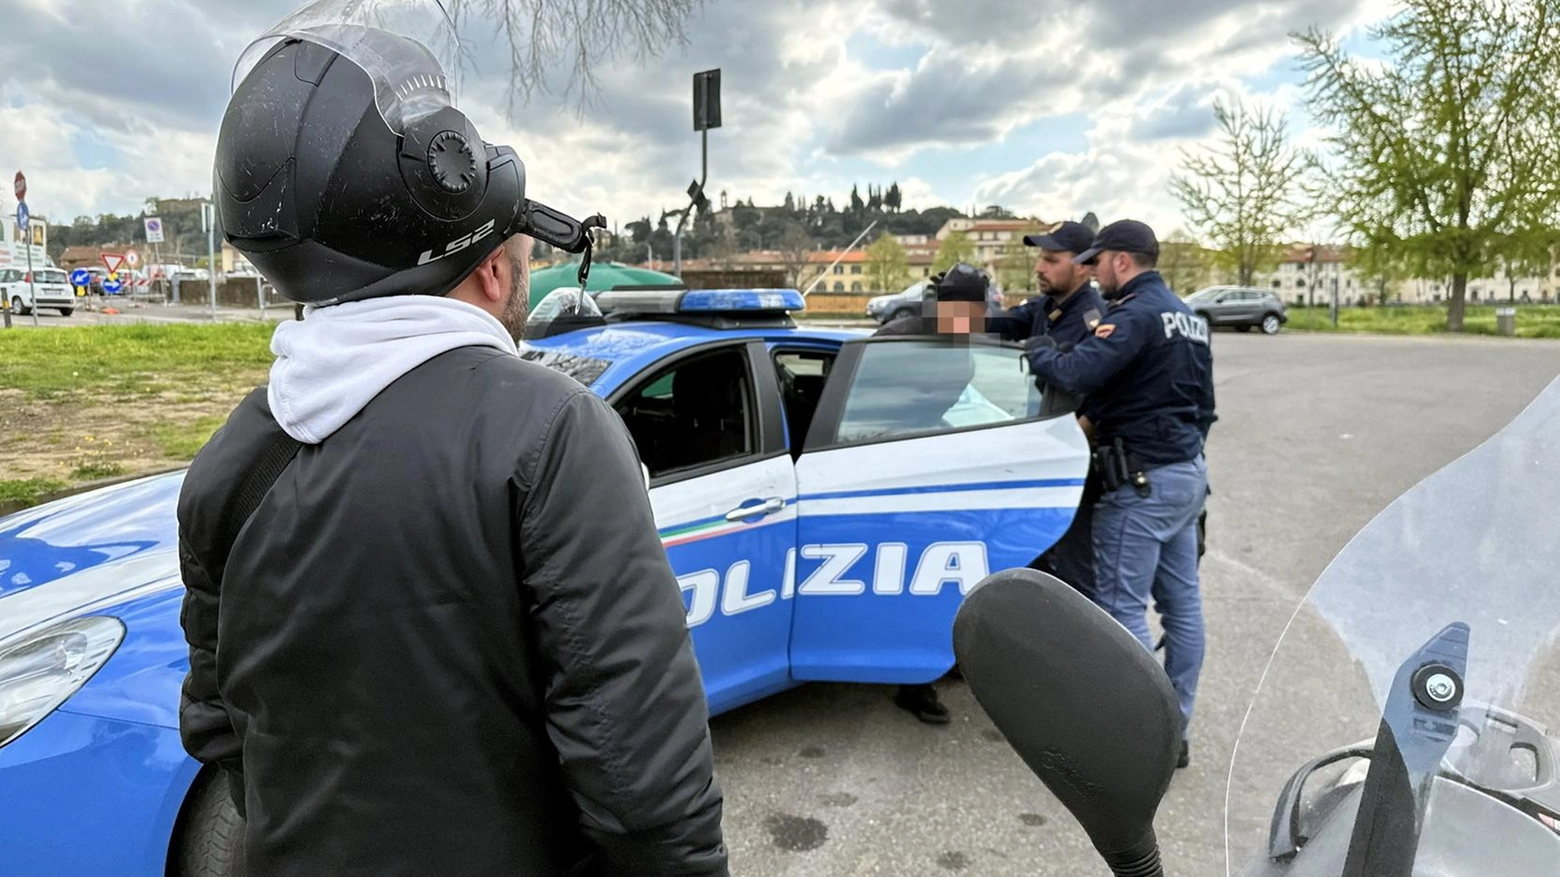 Presidi fissi di polizia, è scontro . Il j’accuse di Fdi e Fi al Comune. Albanese: "Polemiche false. Basta"